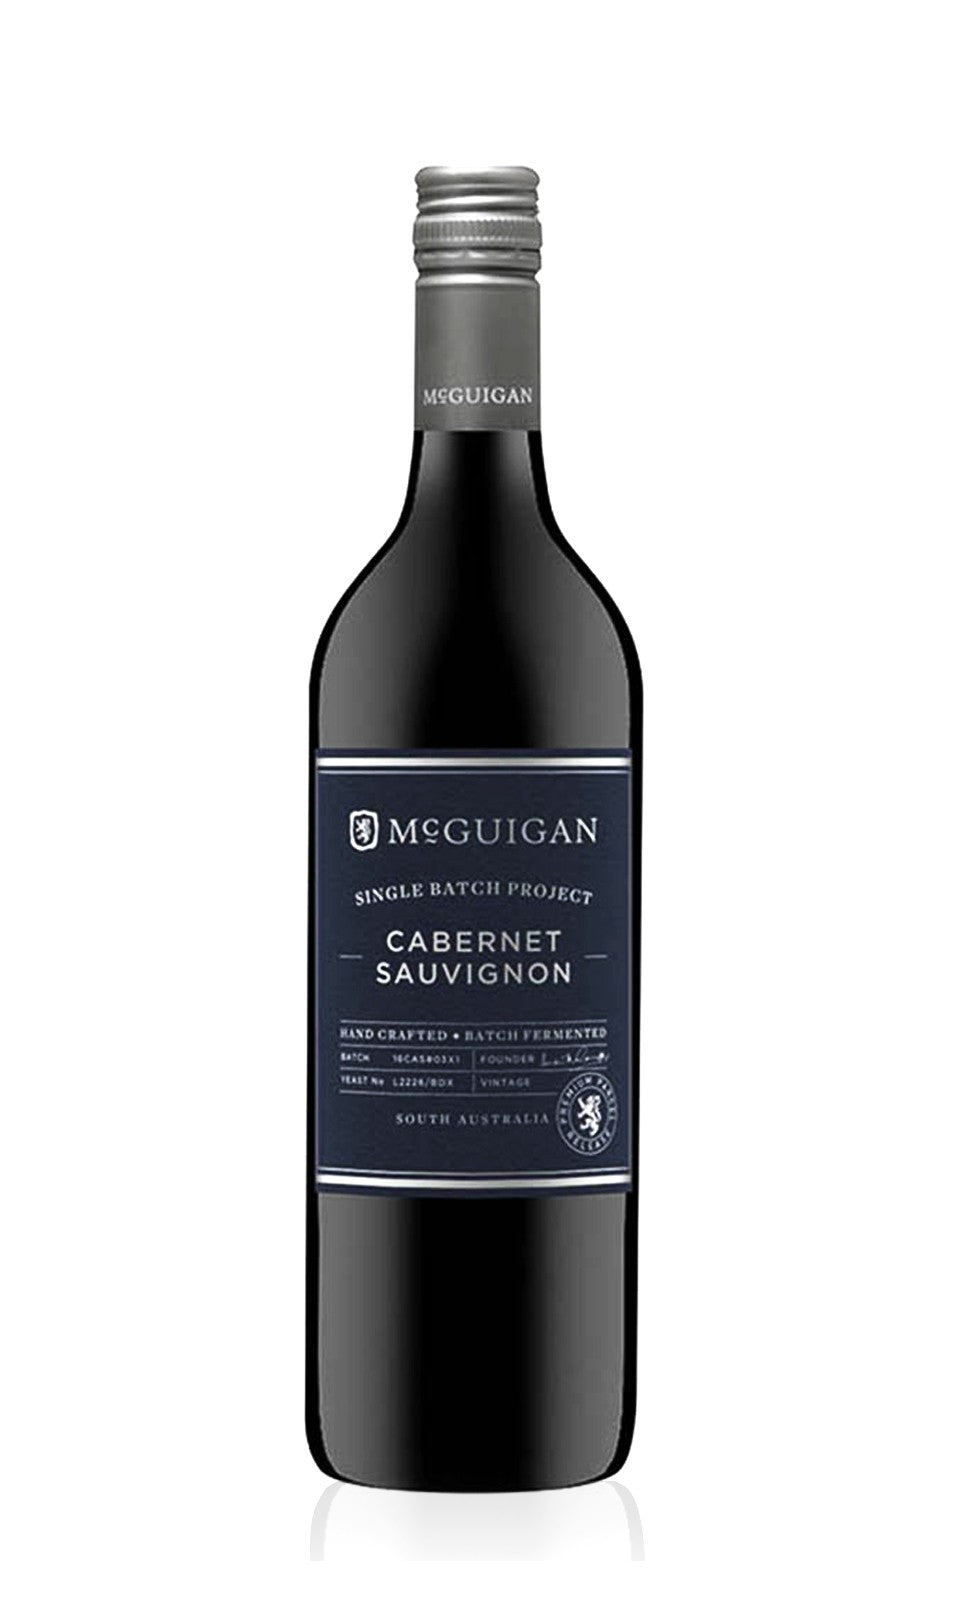 McGuigan Single Batch Cabernet Sauvignon